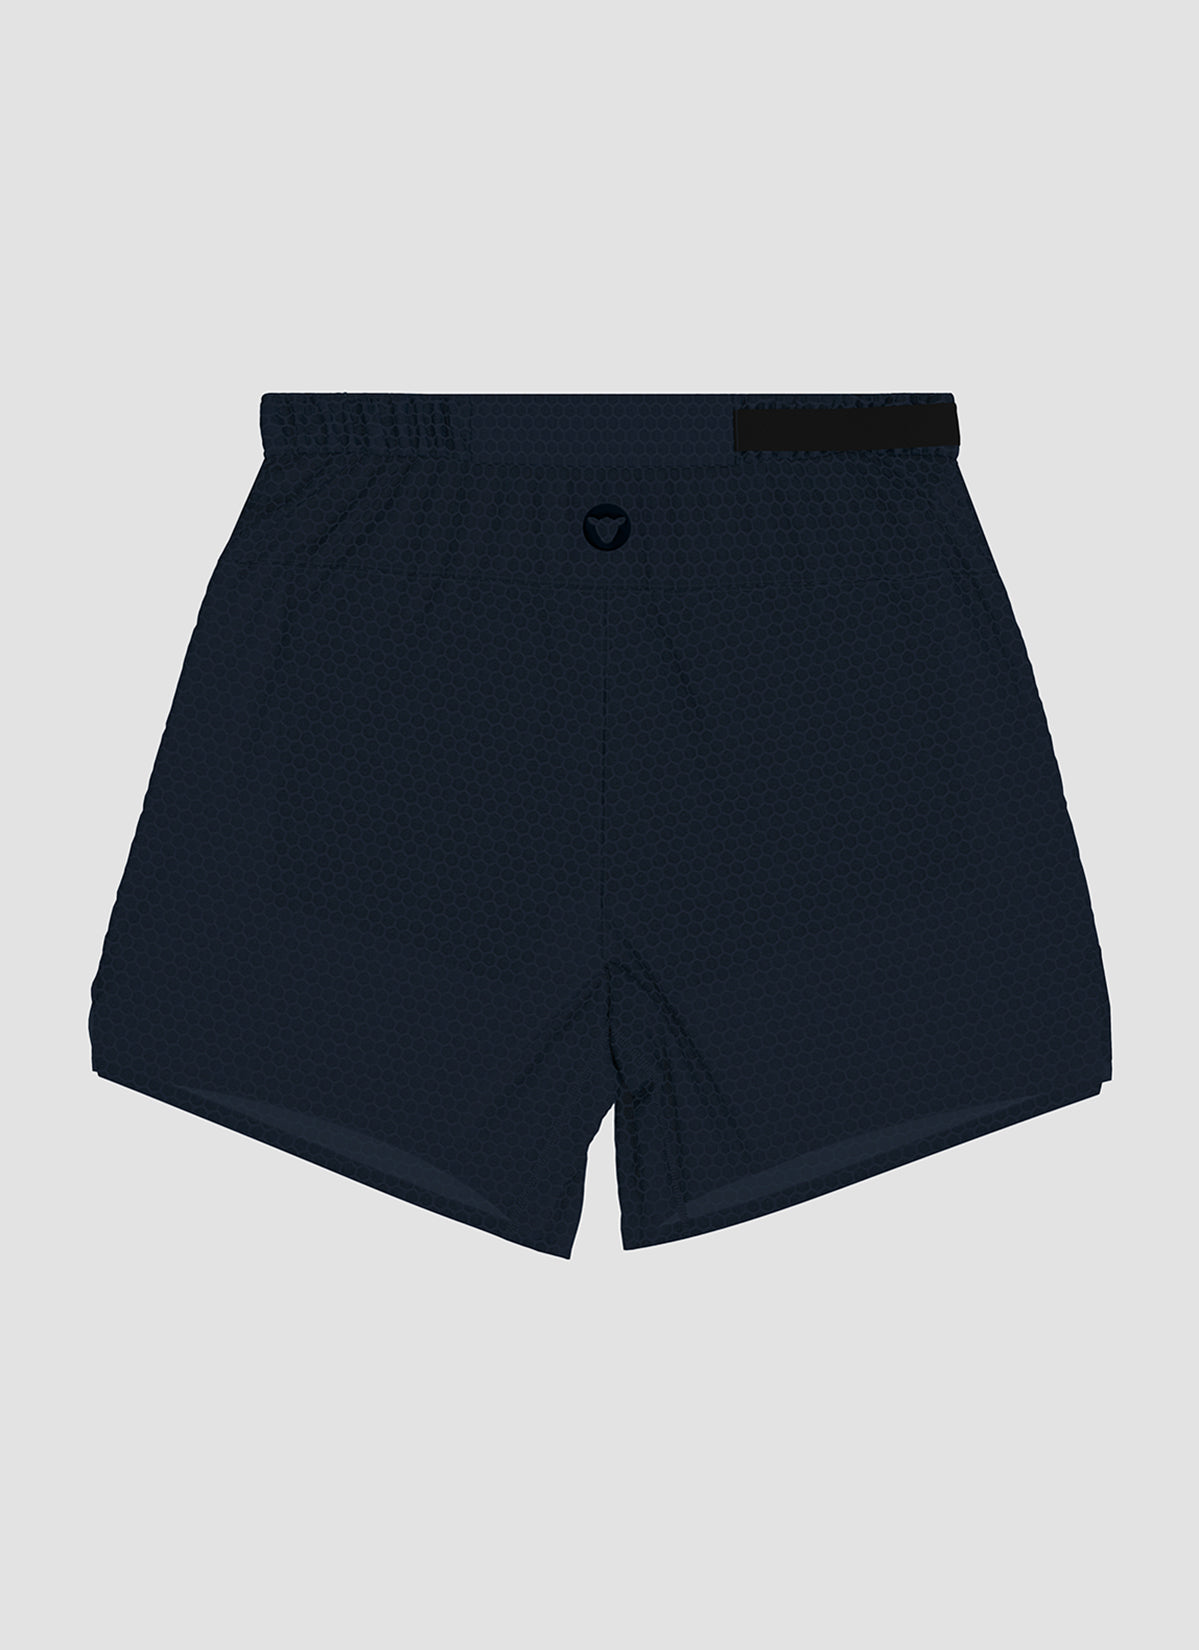 Men's Fly 7" Shorts - Midnight Navy